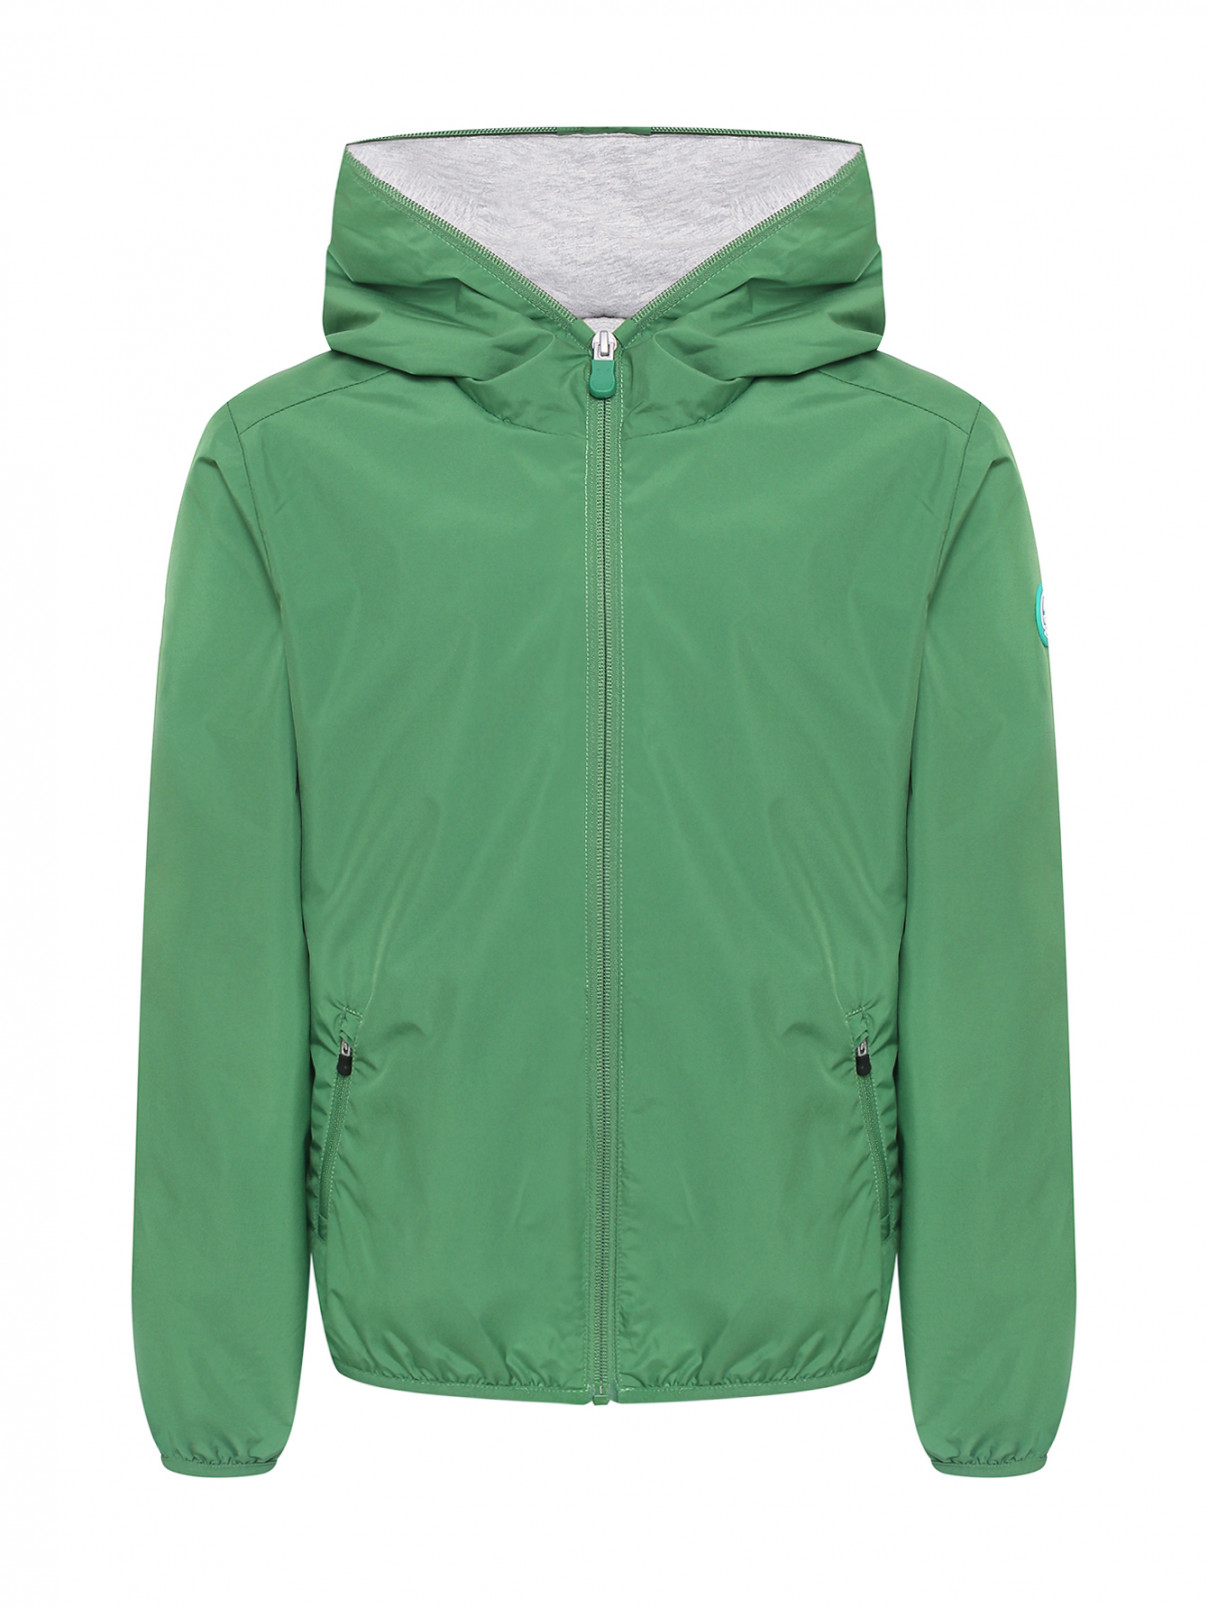 Куртка с капюшоном и карманами Save the Duck  –  Общий вид  – Цвет:  Зеленый